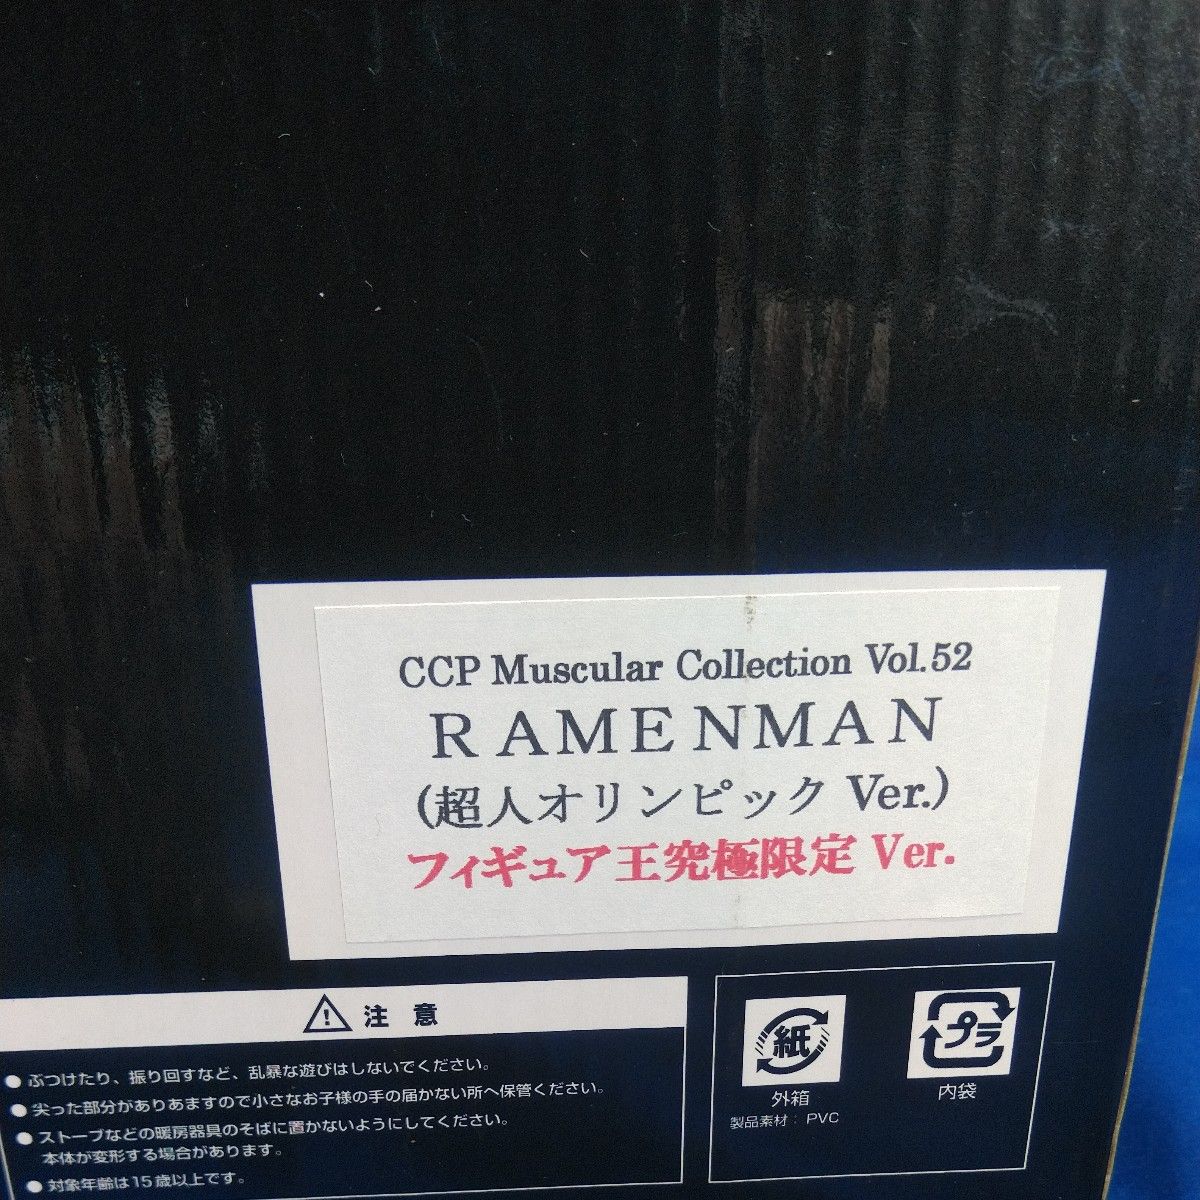 CCP Muscular Collection Vol.52 ラーメンマン 超人オリンピックver.  フィギュア王究極限定